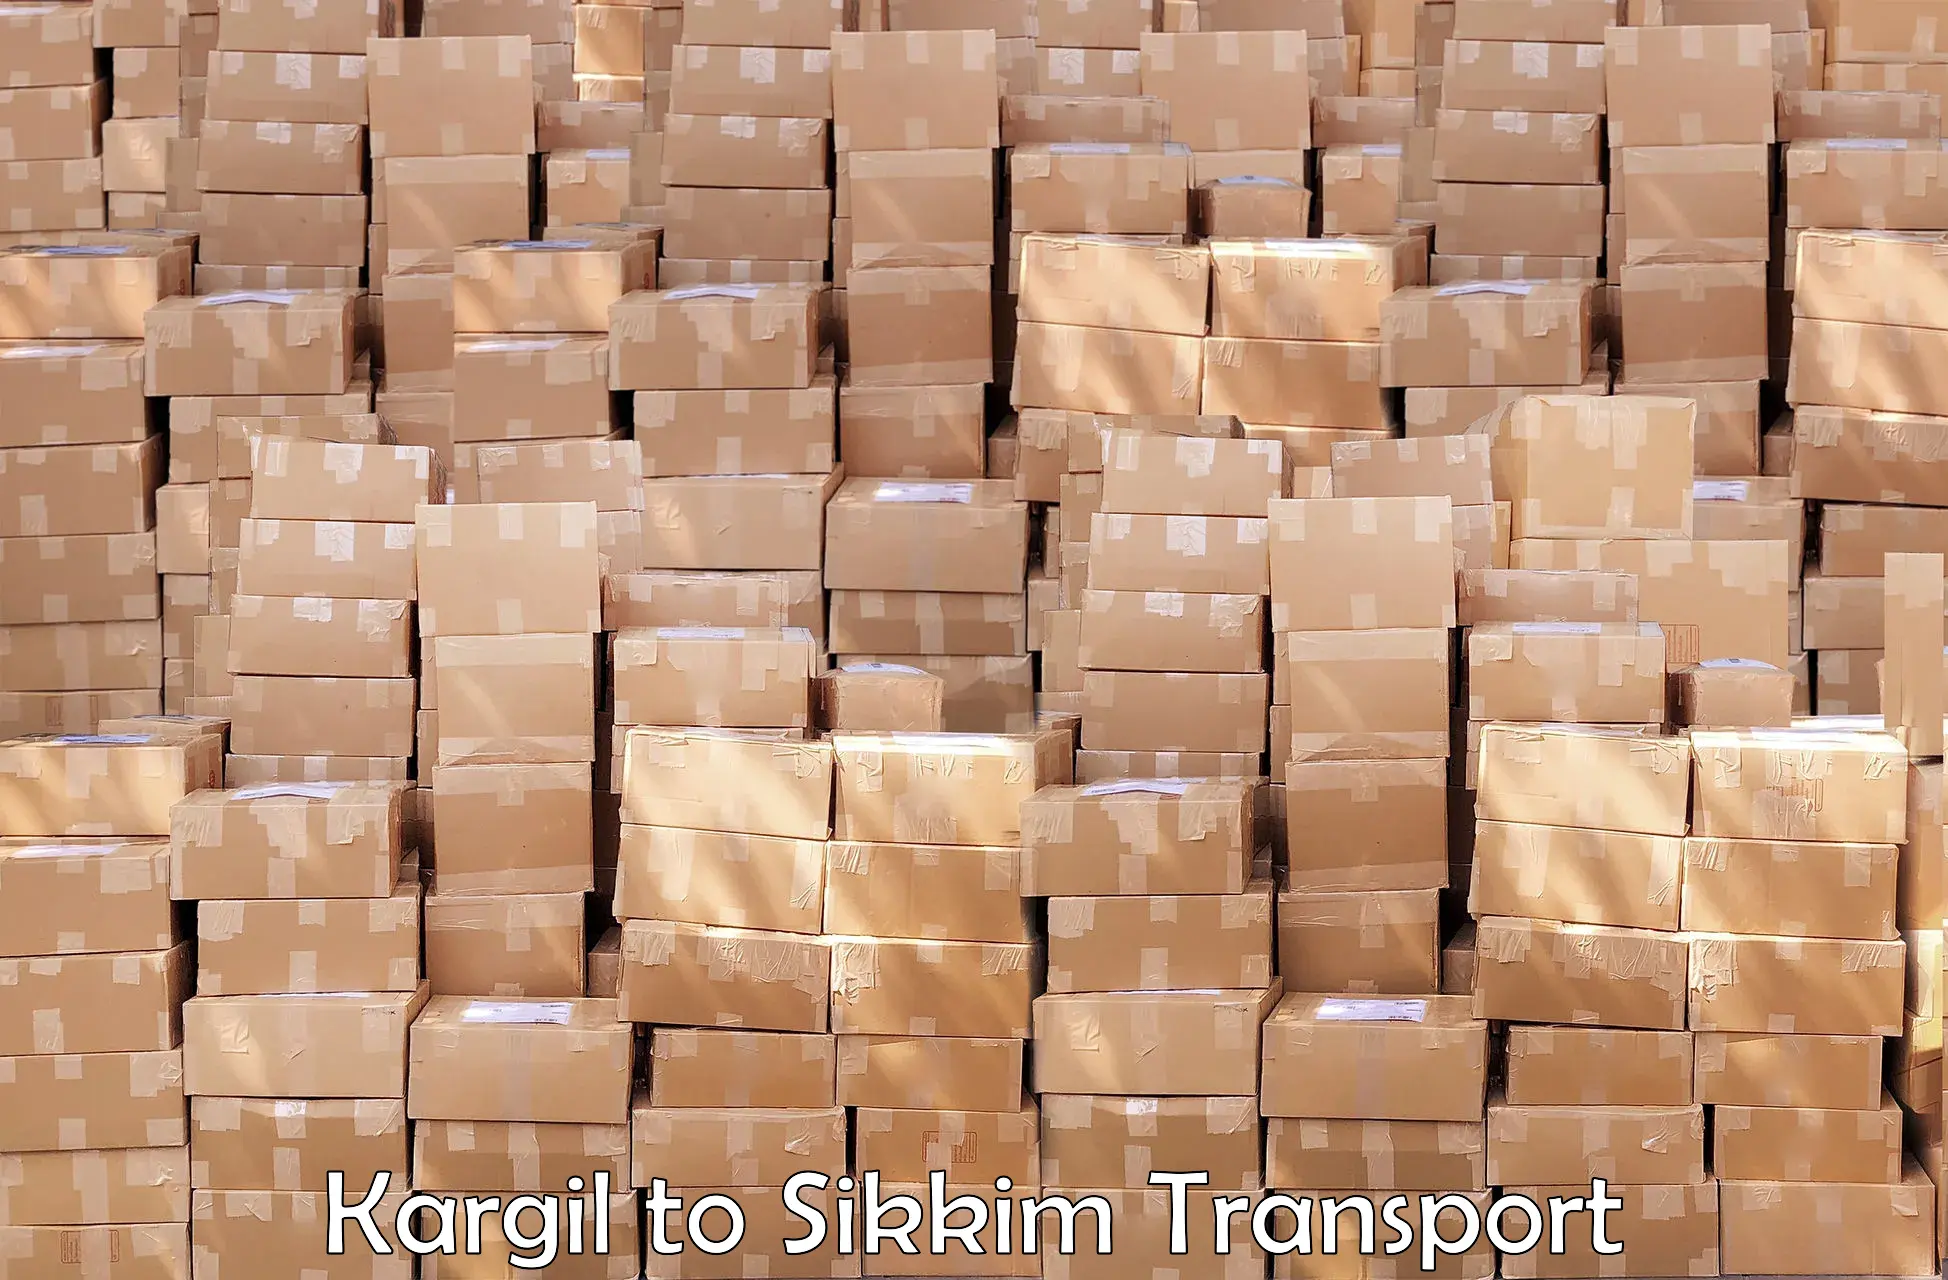 Container transport service Kargil to Mangan